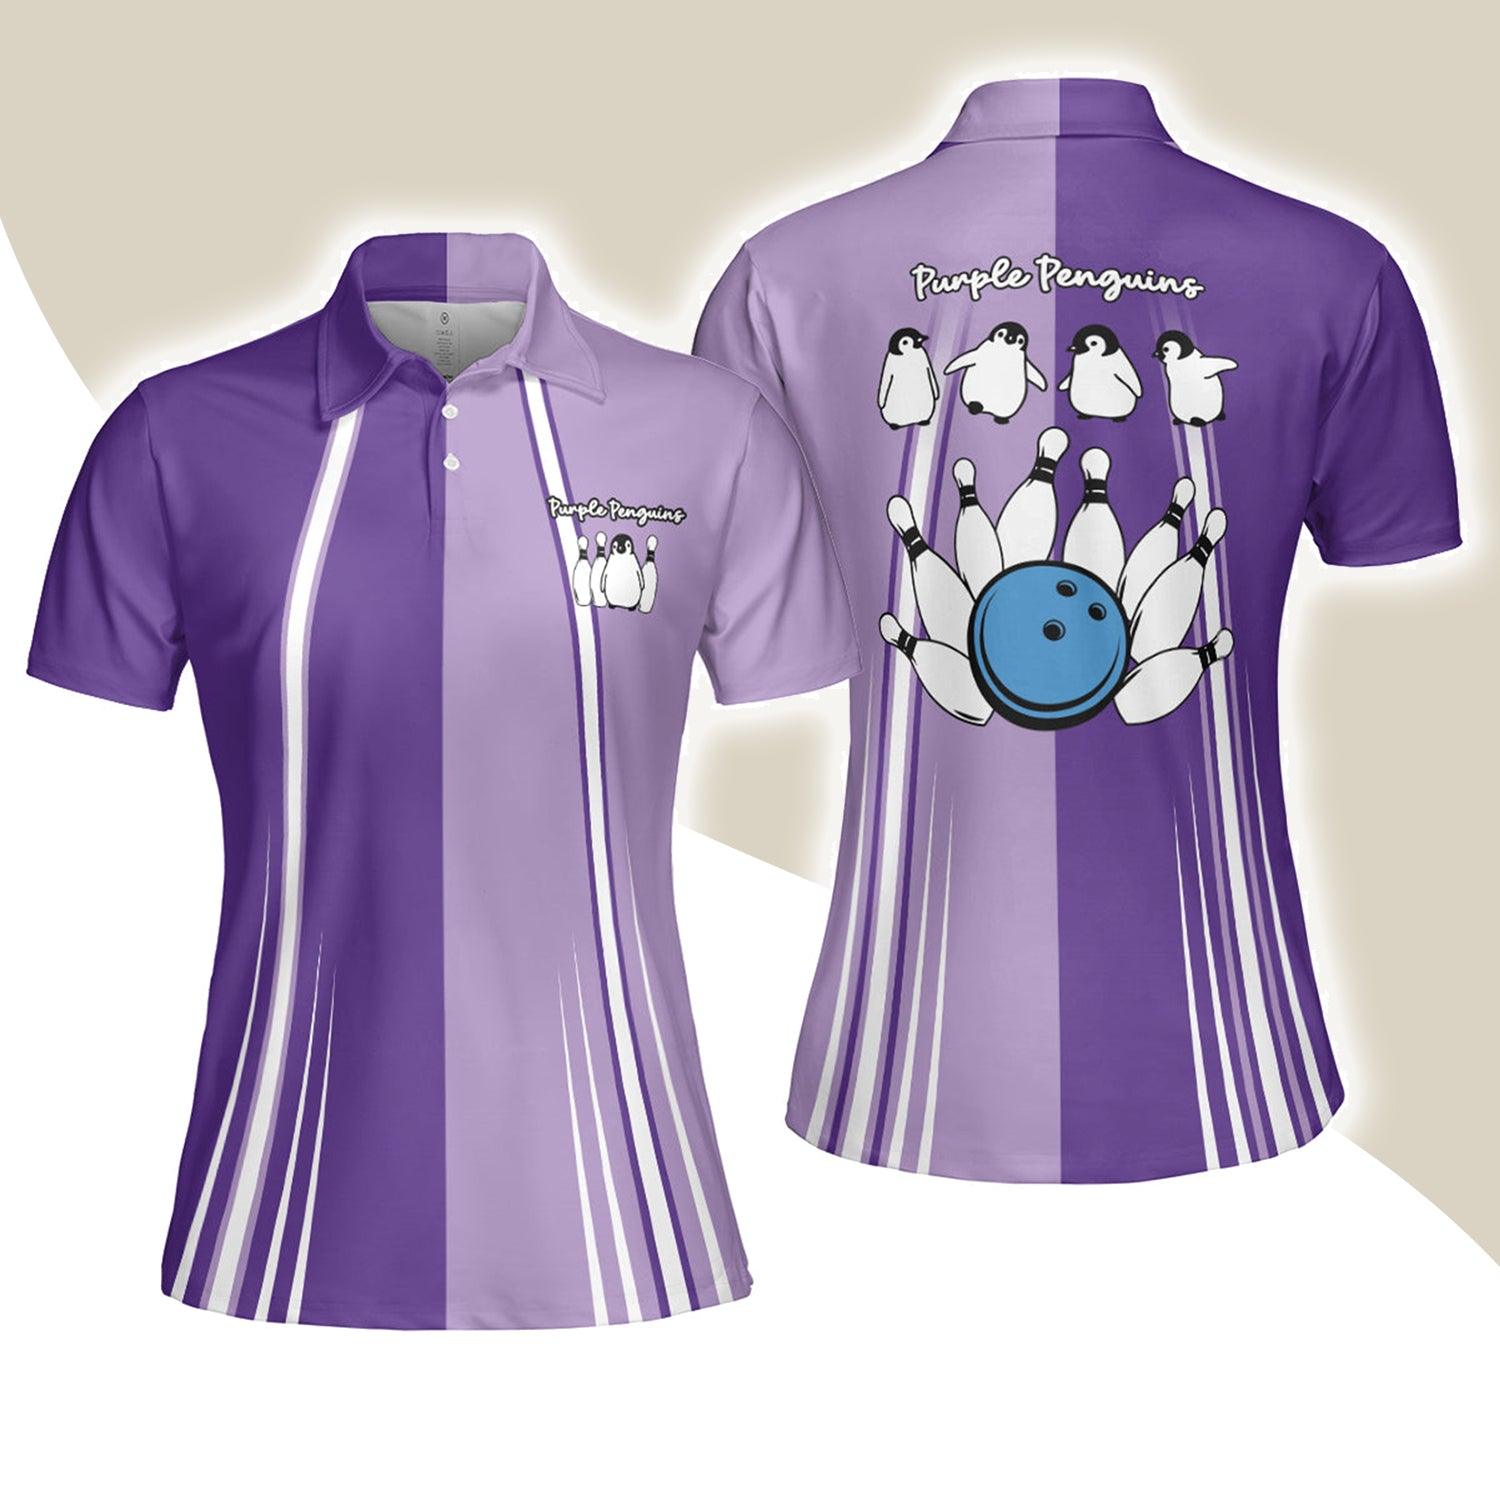 Bowling Women Polo Shirt, Purple Penguins Bowling Polo Shirts - Gift For Wife, Family, Girlfriend - Amzanimalsgift